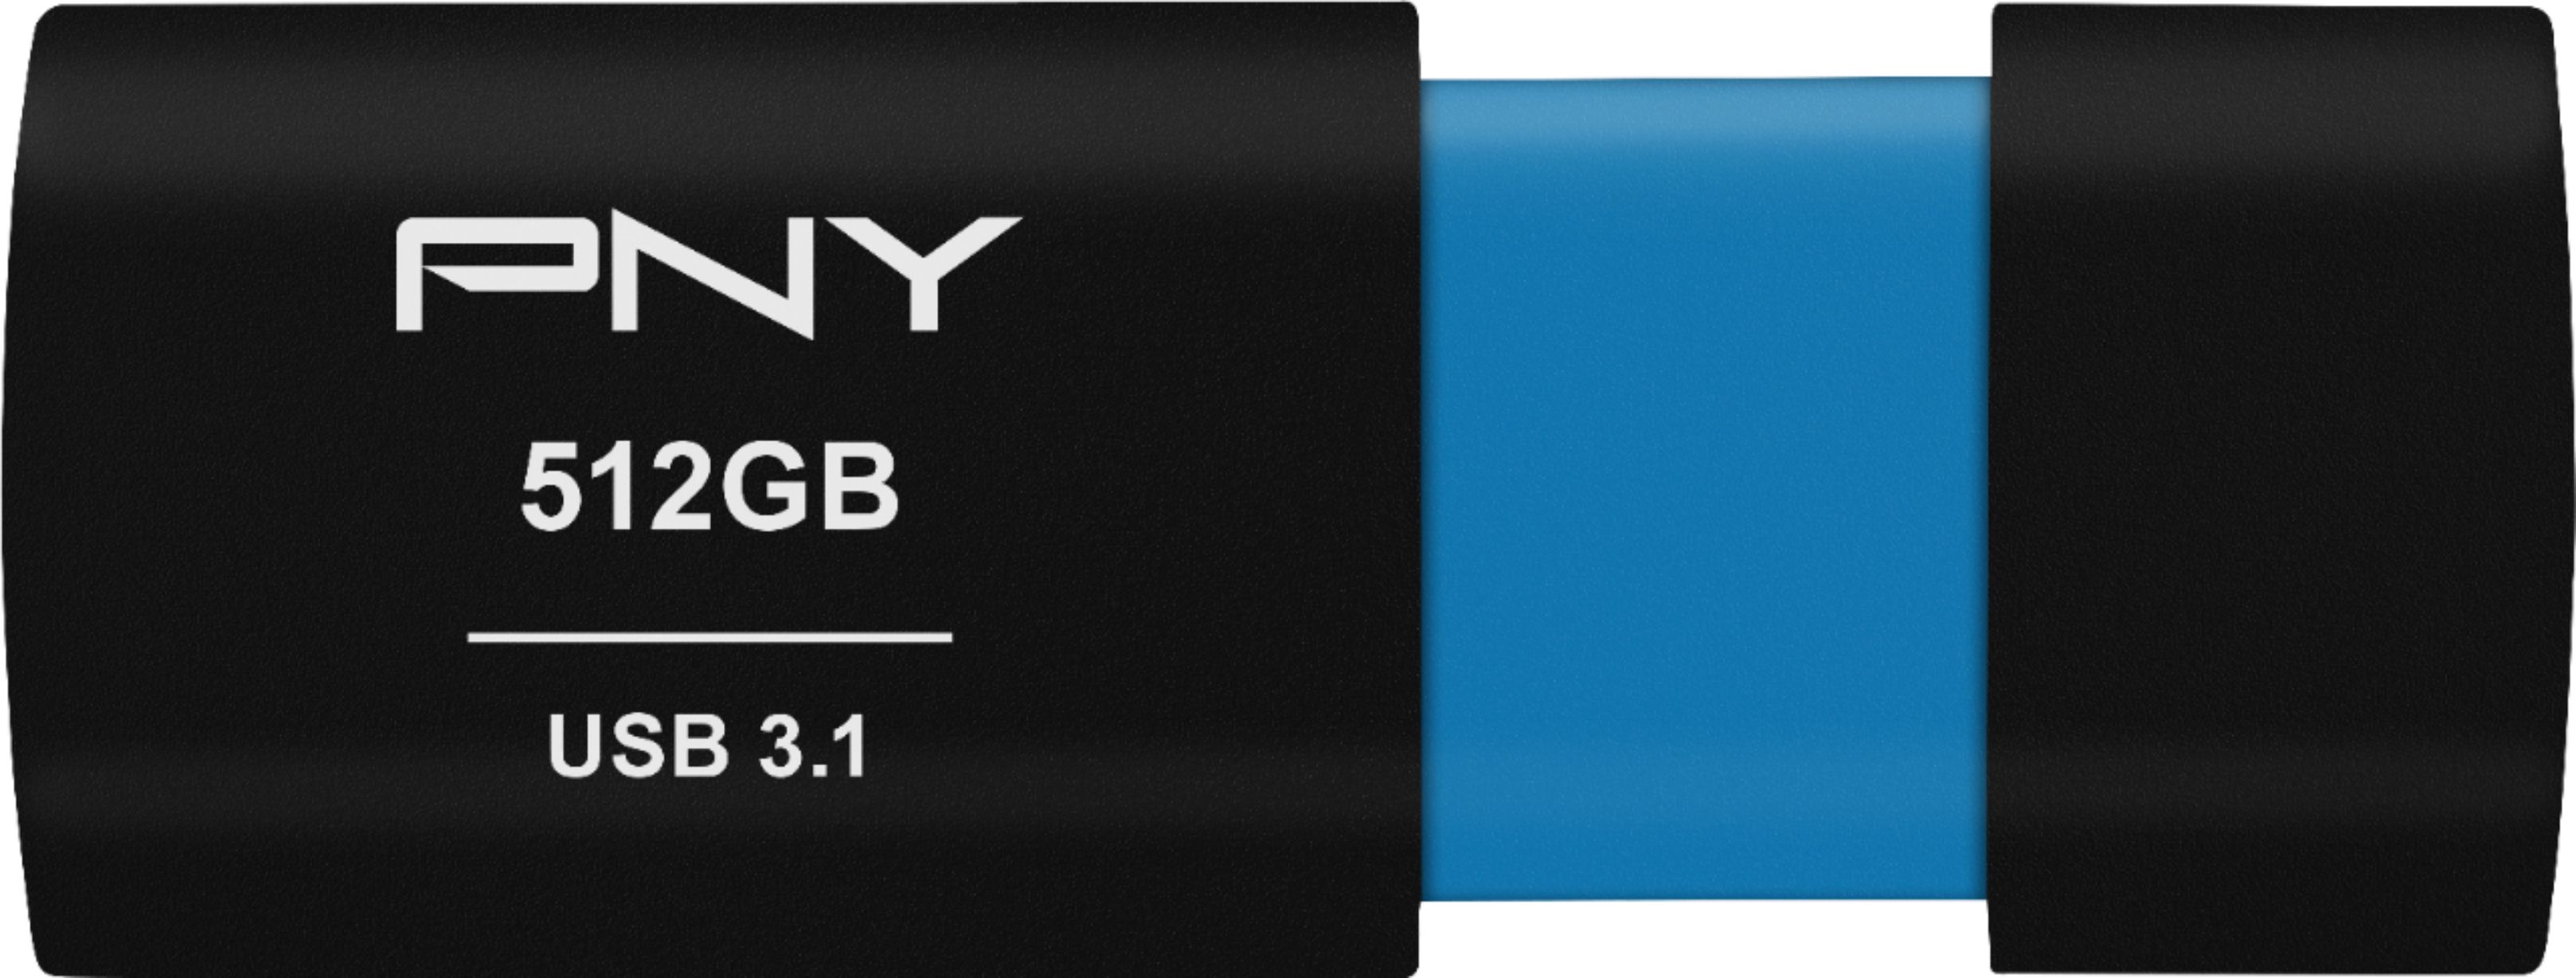 PNY - Elite-X 512GB USB 3.1 Flash Drive - Black - .99